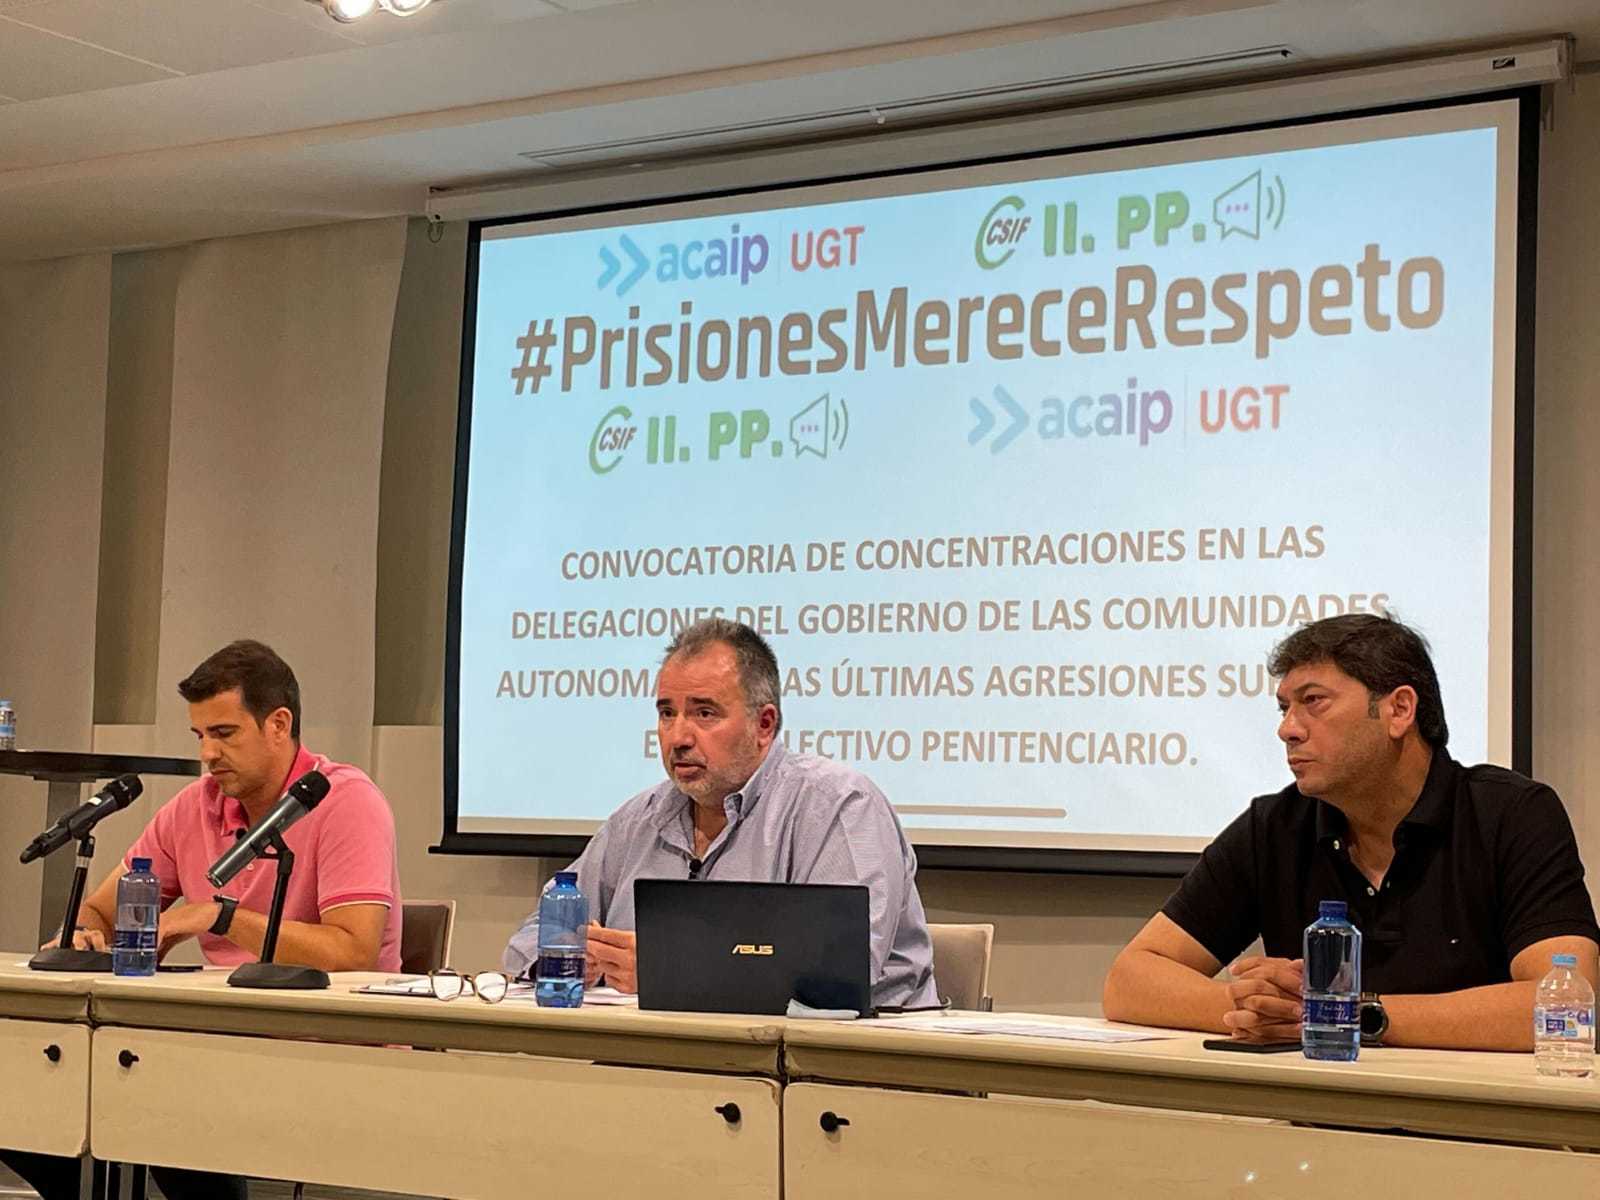 La Audiencia Nacional investigará como terrorismo el corte de la yugular de un preso yihadista a un funcionario en Murcia